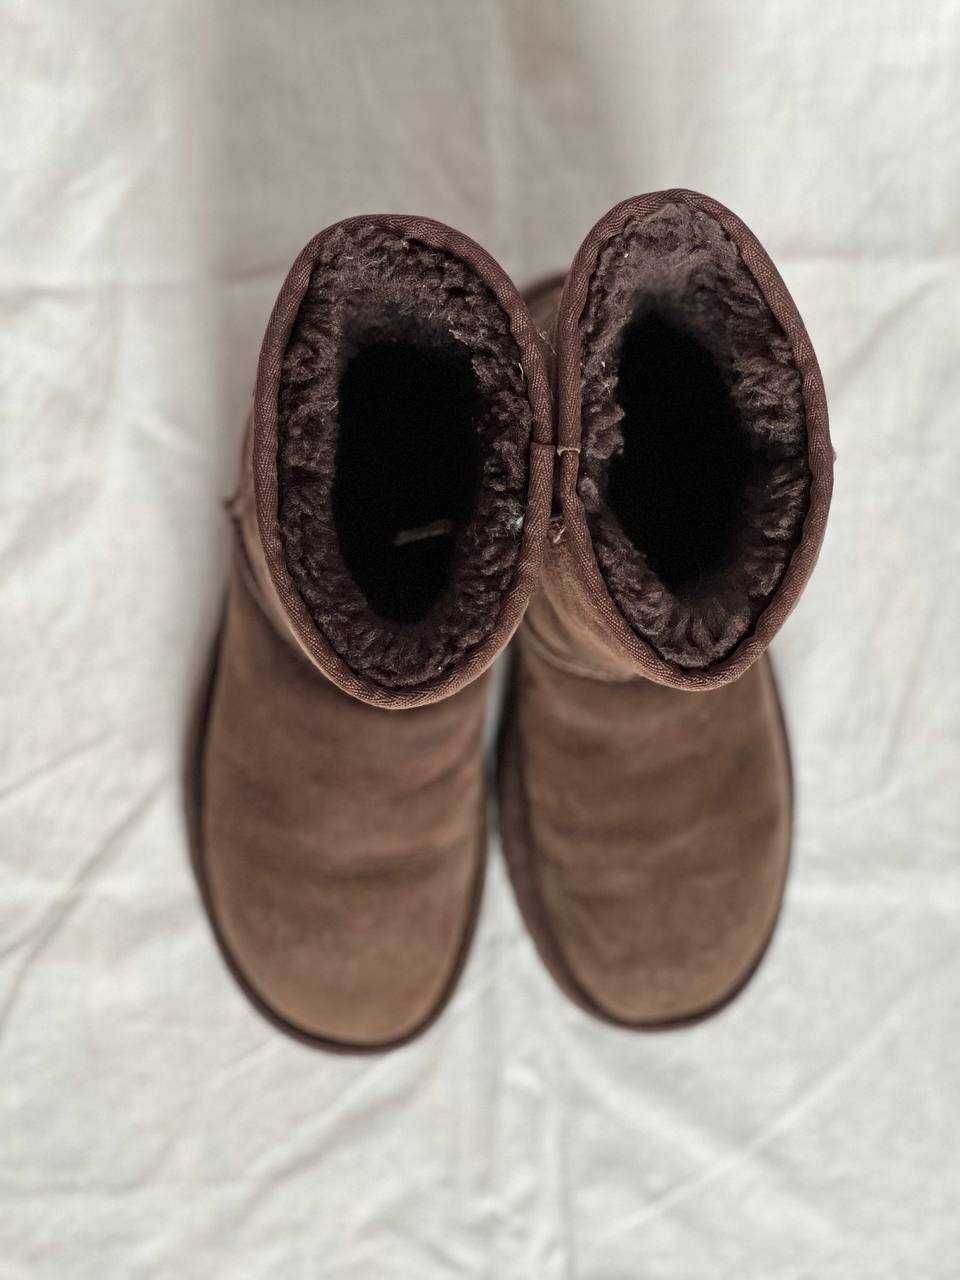 Cапоги ботинки UGG угги уггі зимові коричневі замша 37 розмір оригінал